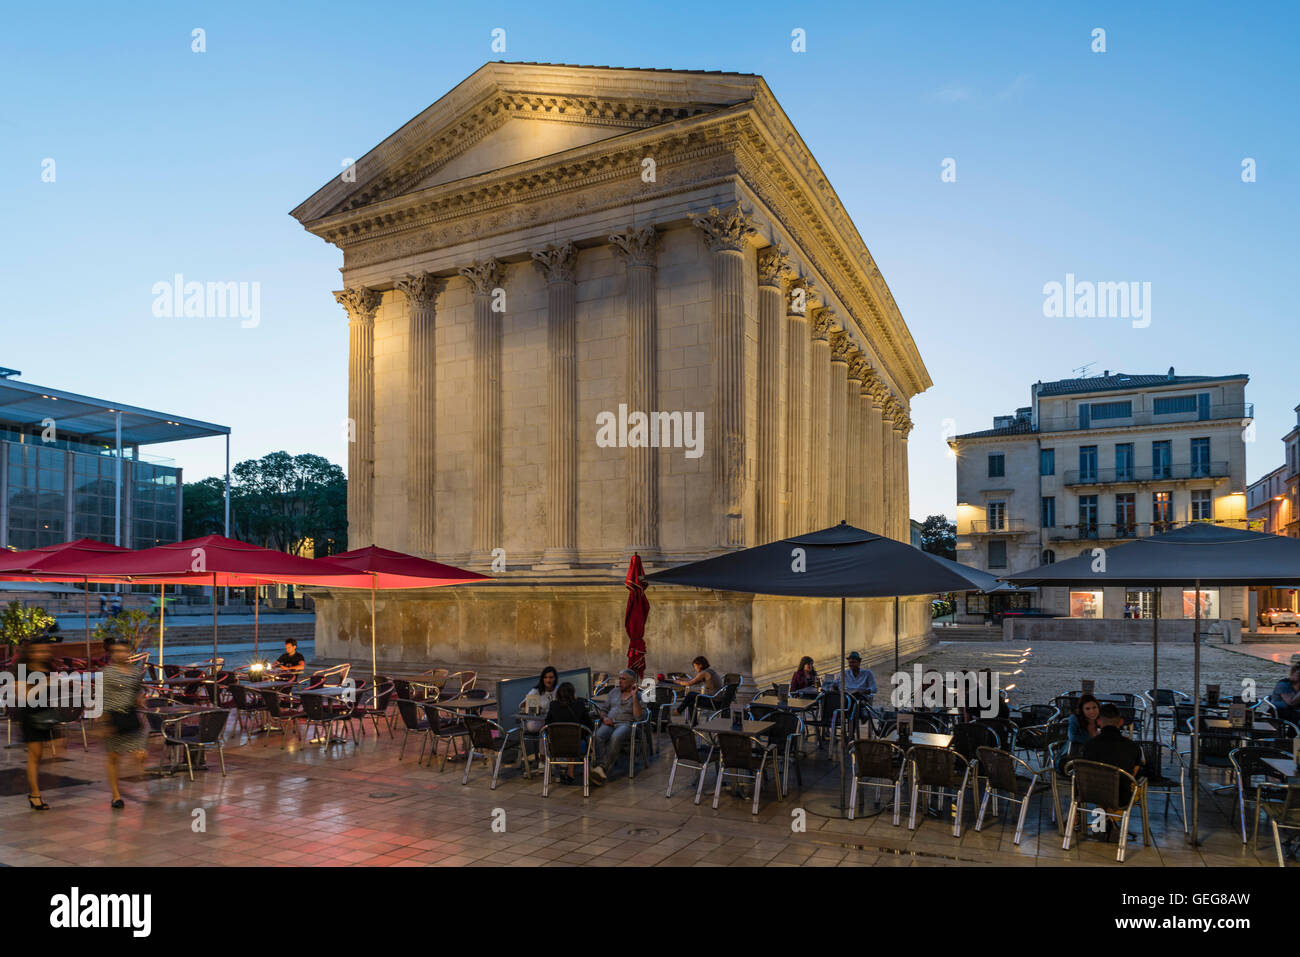 Street Cafe, Maison Carrée , ancient Roman temple , Place de la Maison Carrée, Nîmes, Languedoc-Roussillon, Gard Department, Fra Stock Photo